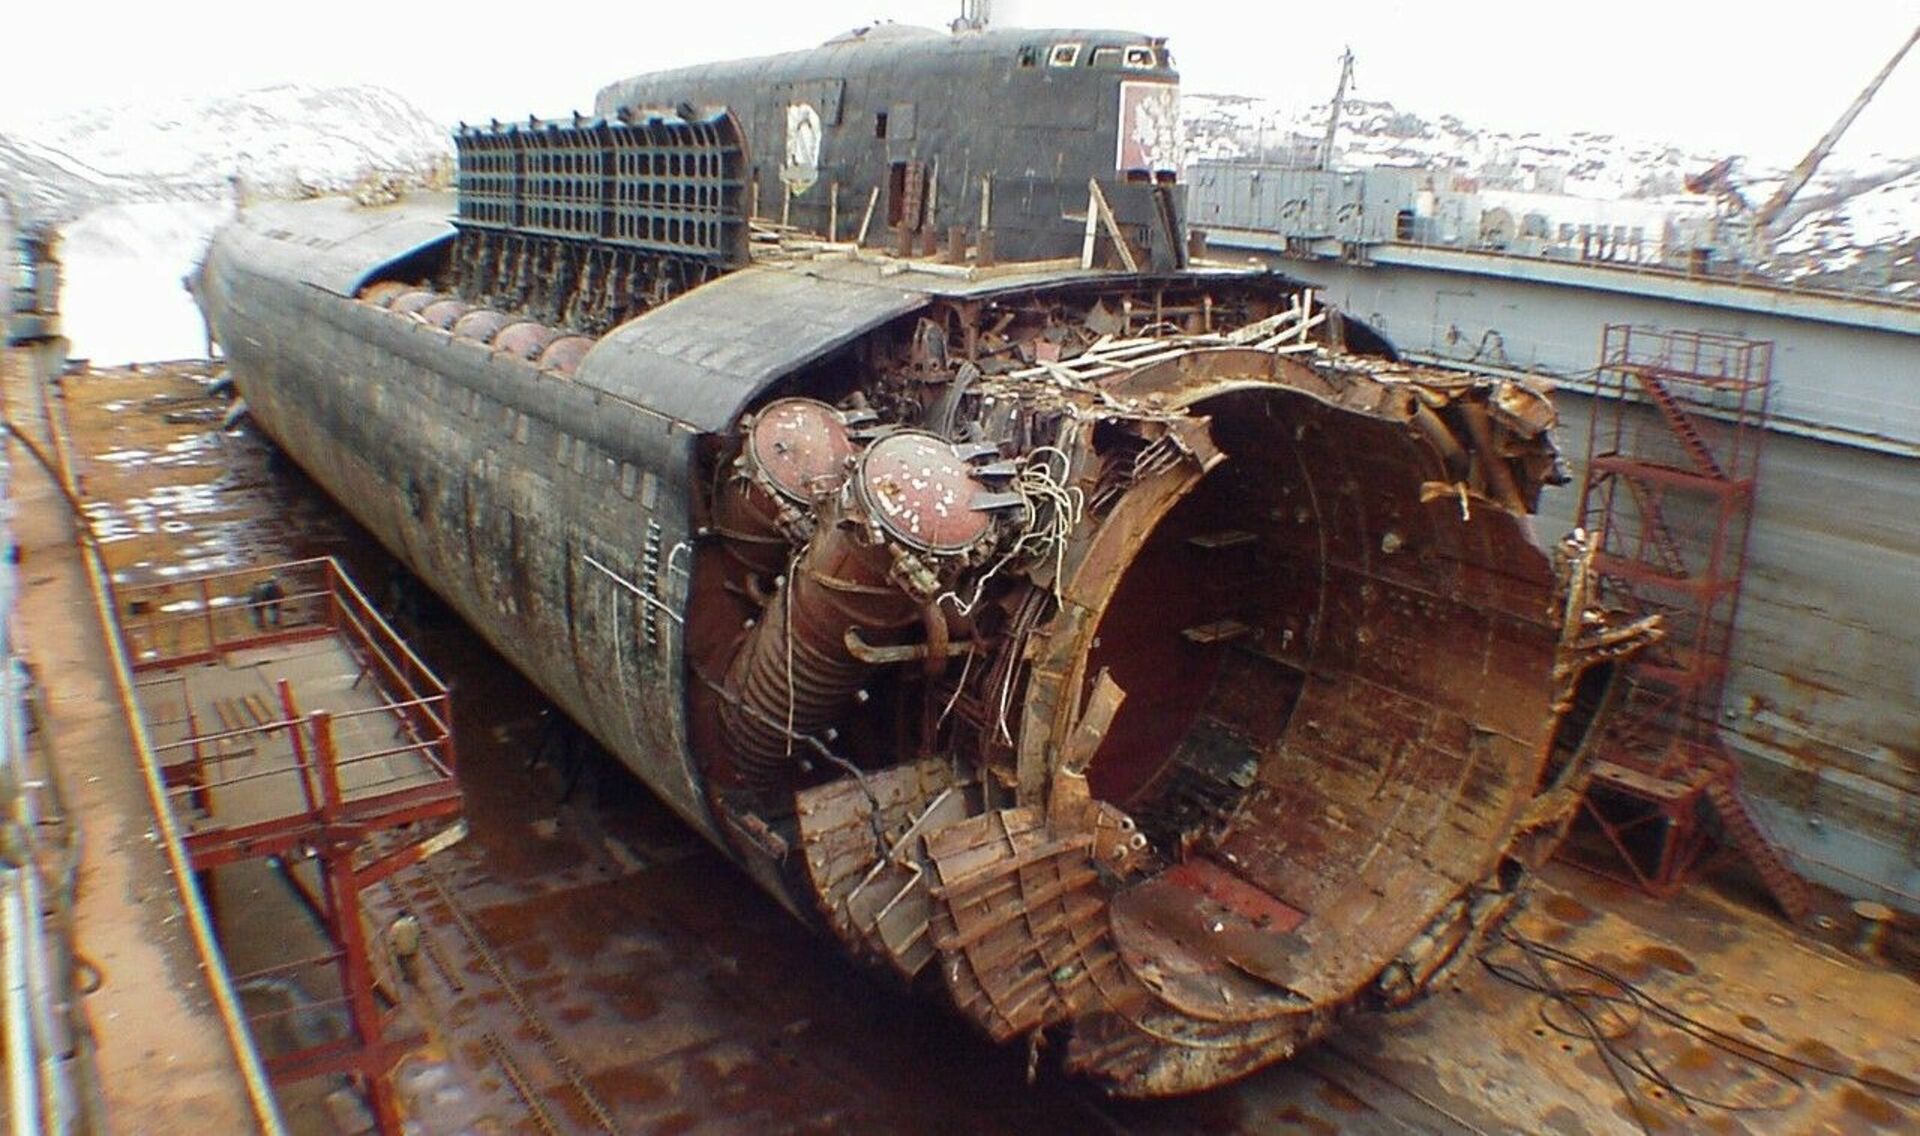 Курск ушел под воду. К-141 «Курск». Подводная лодка к-141 «Курск». Гибель атомной подводной лодки Курск 12 августа 2000 года. Атомная подводная лодка Курск.